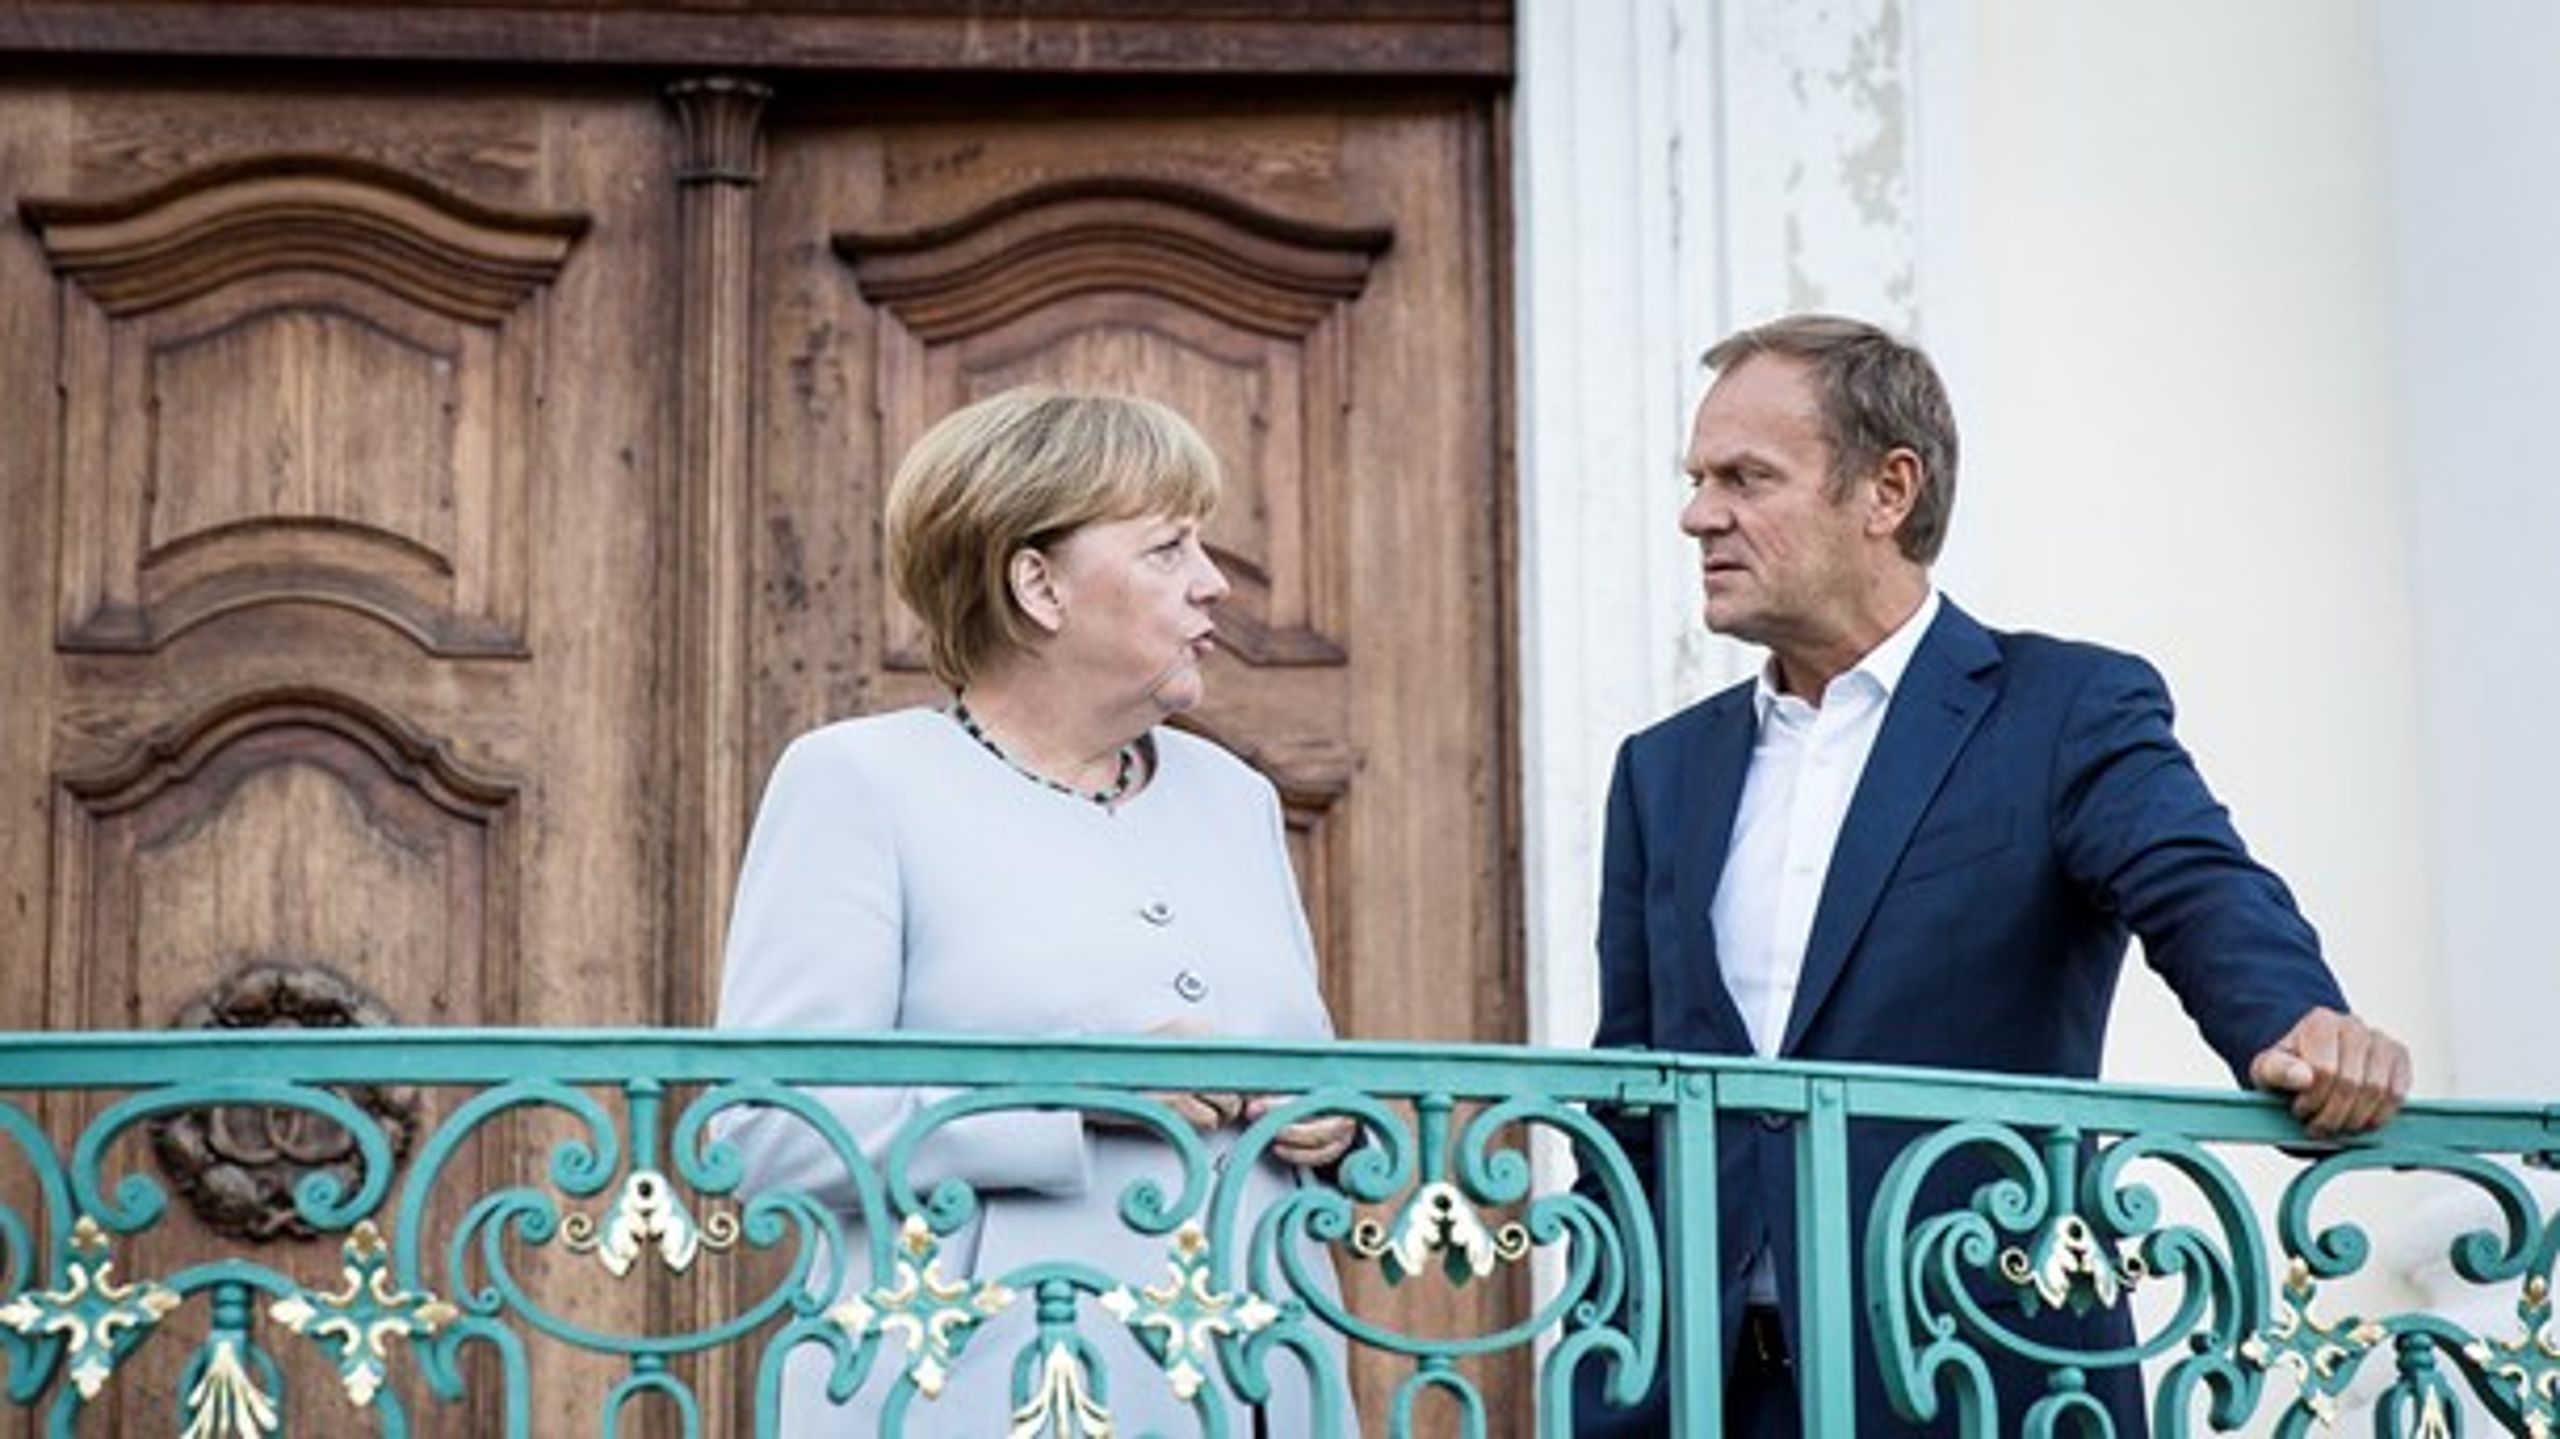 Den tyske förbundskanslern Angela
Merkel och Europeiska rådets ordförande Donald Tusk möts som förberedelse
inför det&nbsp;informella toppmötet i Bratislava där EU:s framtid efter Brexit ska tas
upp.